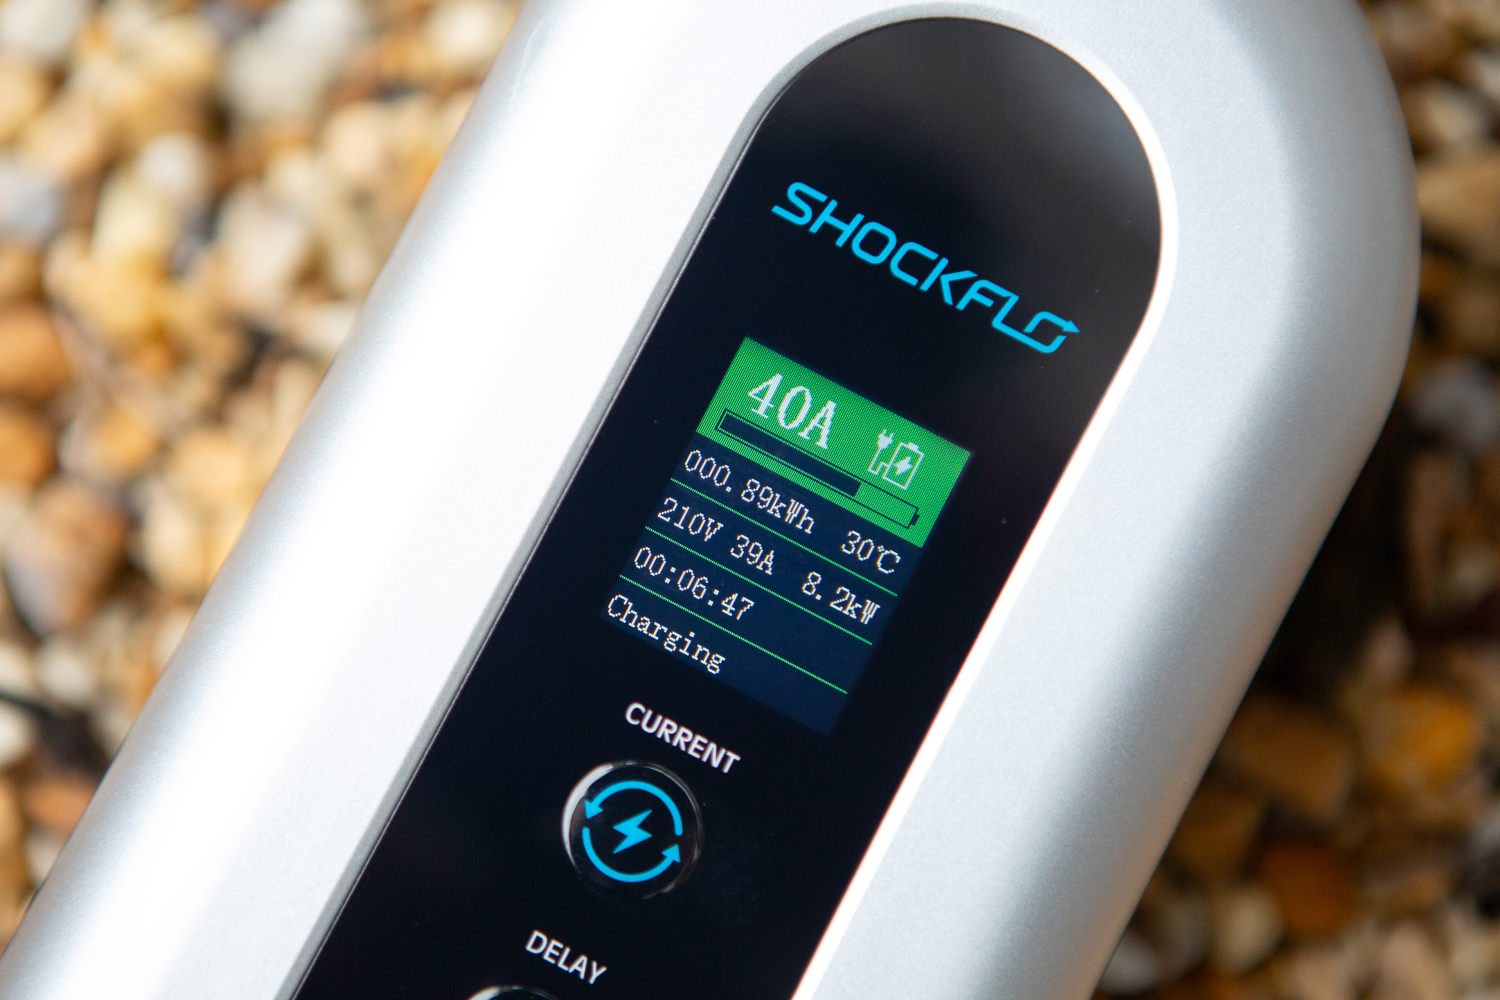 The ShockFlo portable EV charger display